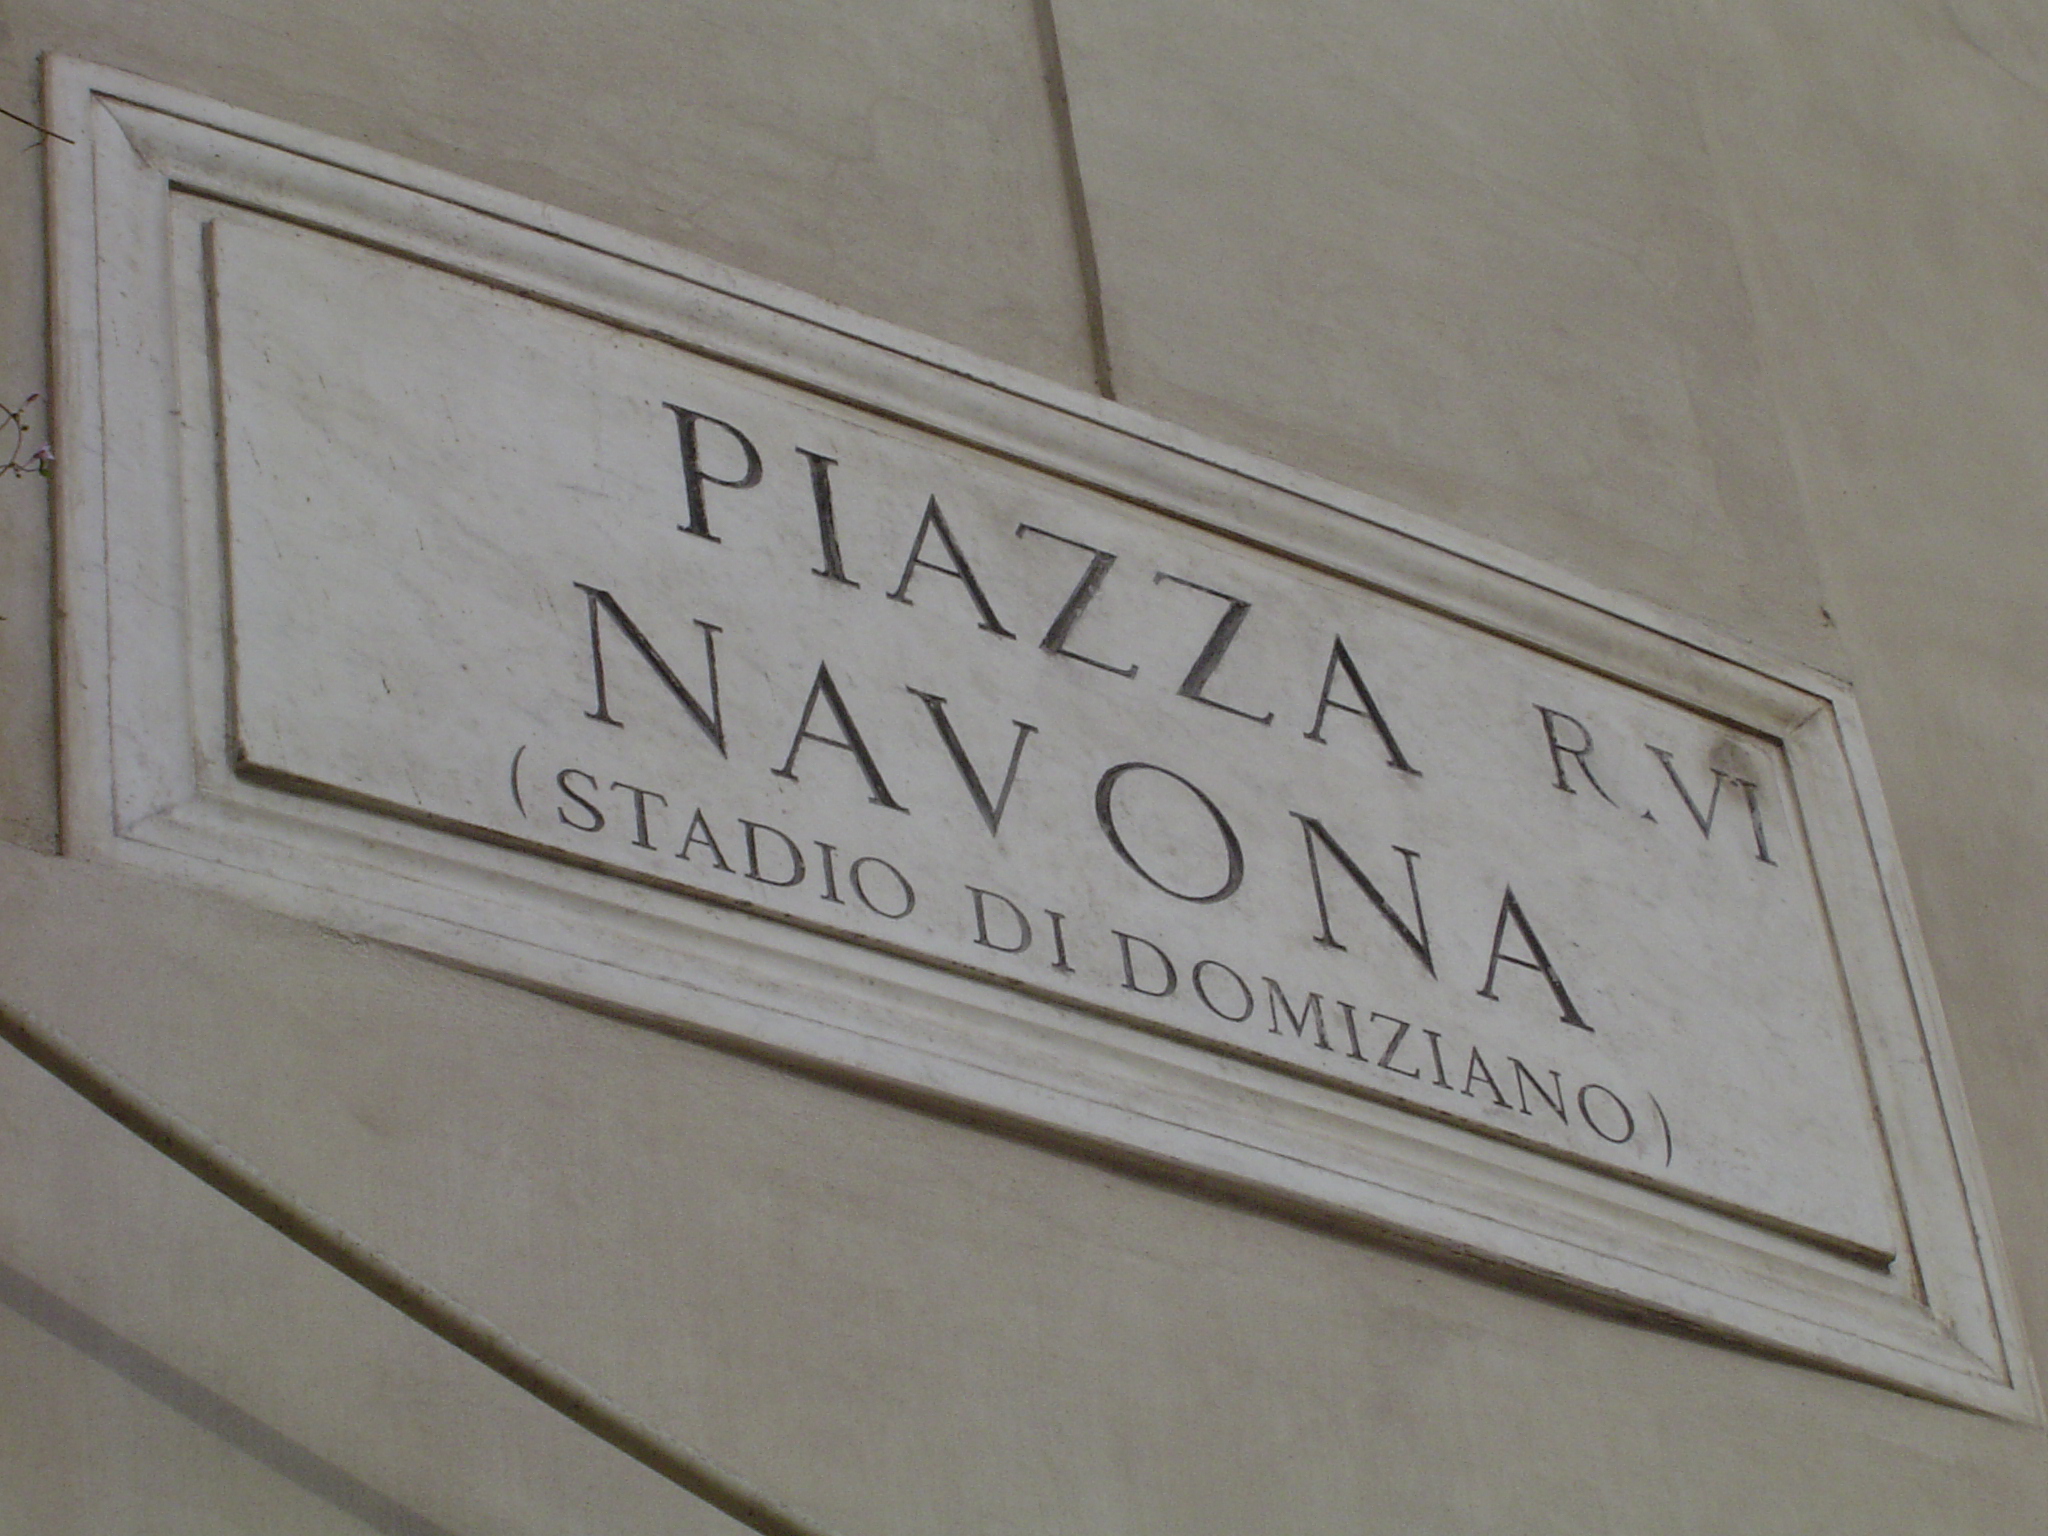 Piazza Navona plaque